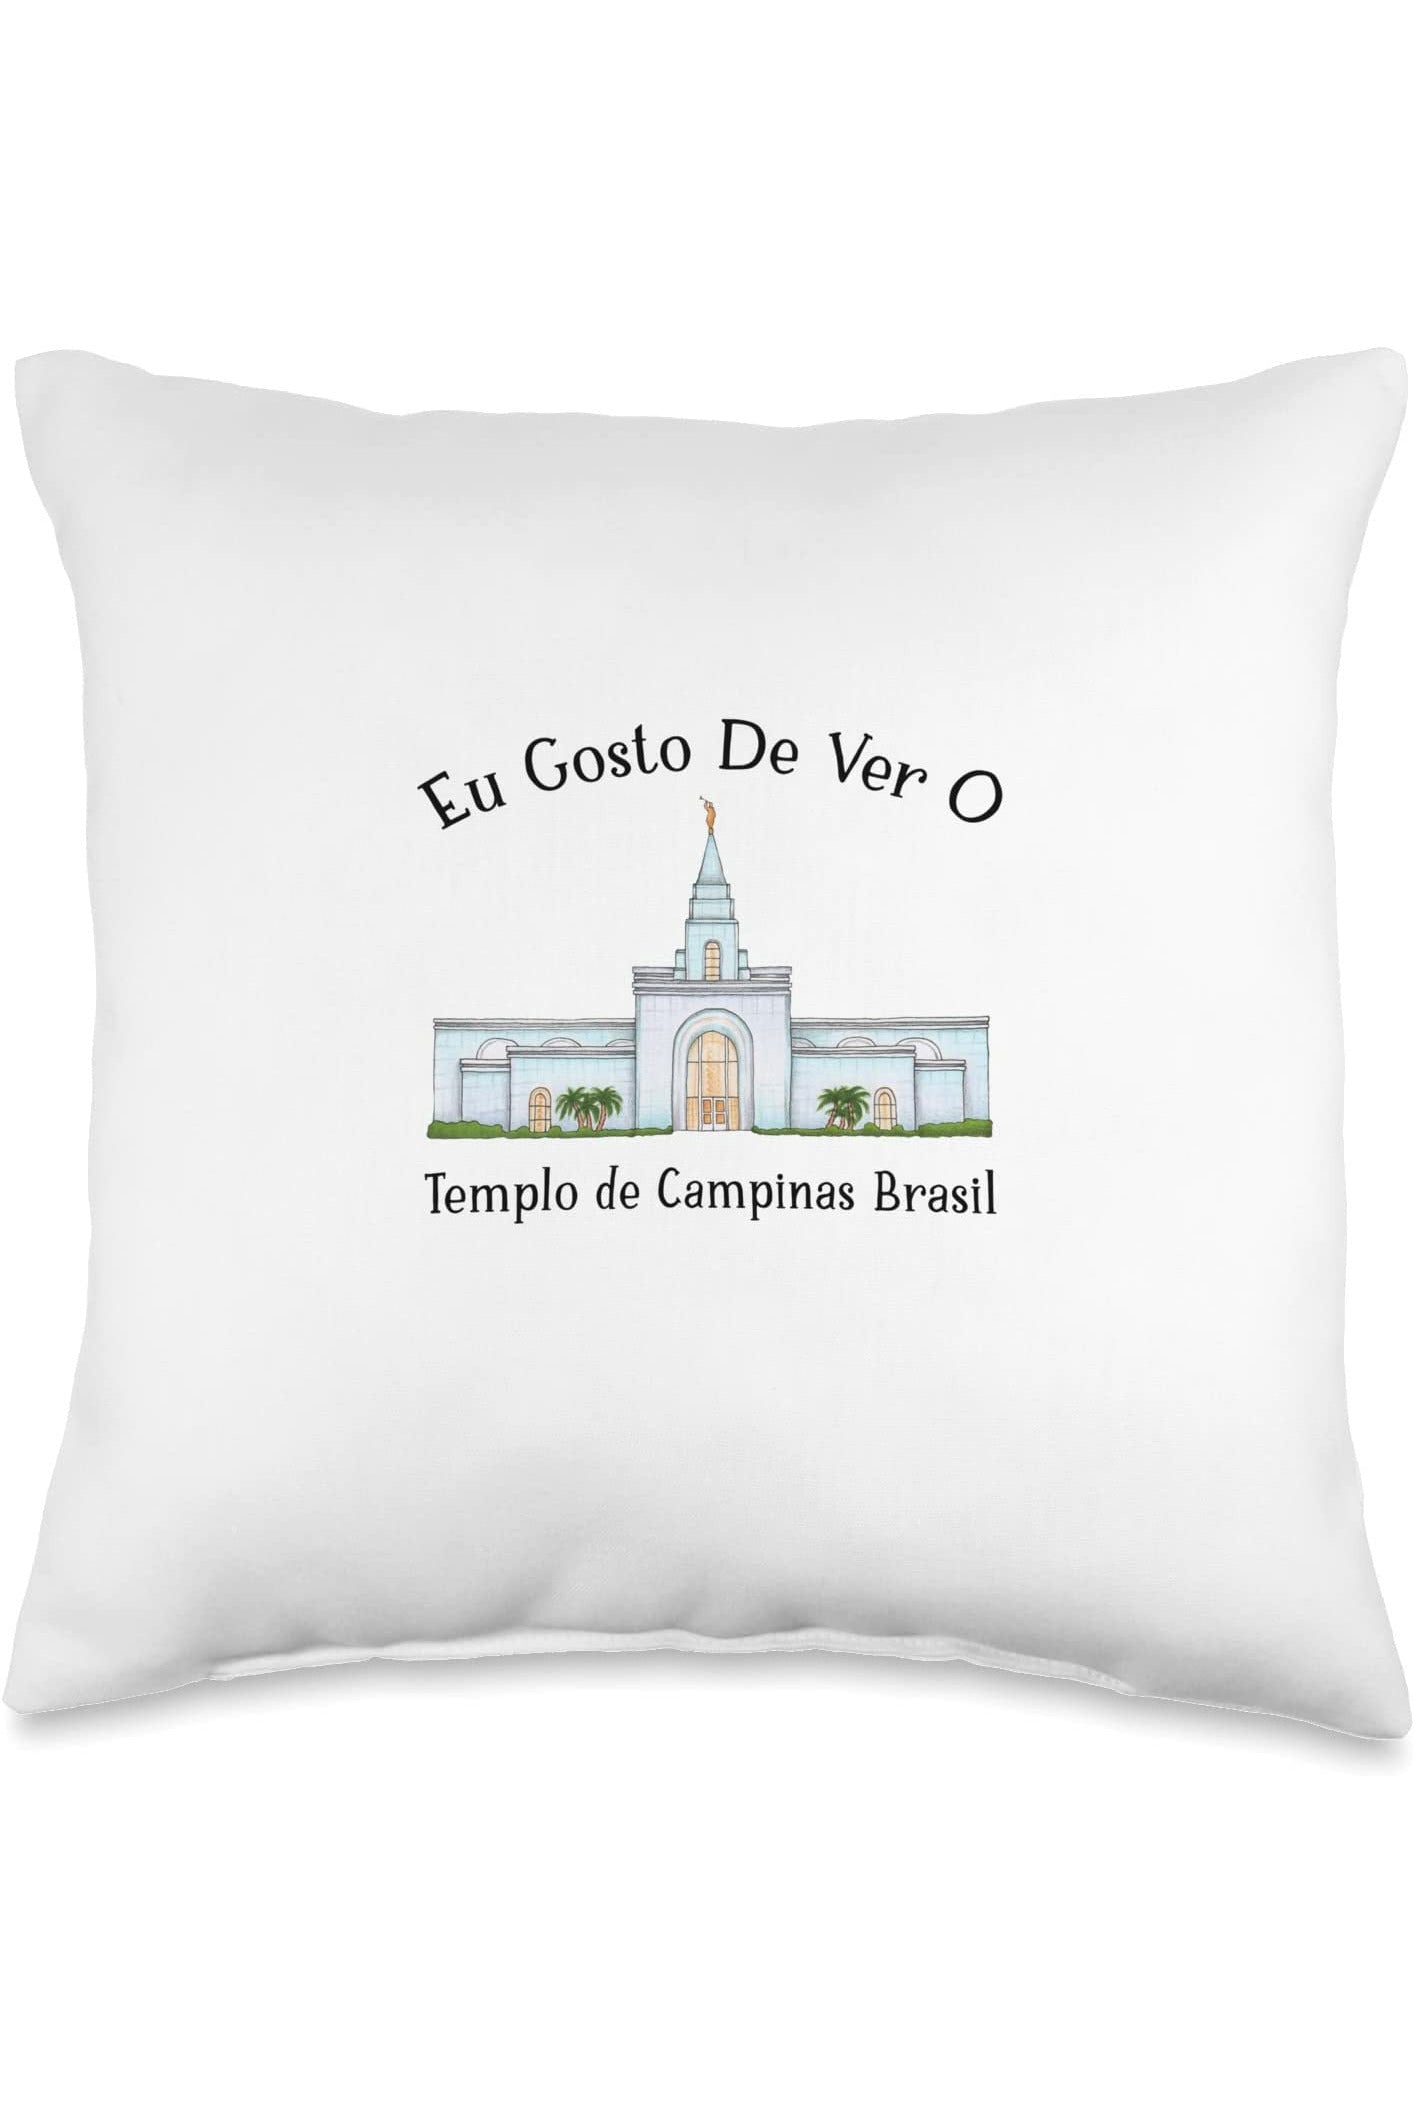 Templo de Manaus Brasil Throw Pillows - Happy Style (Portuguese) US